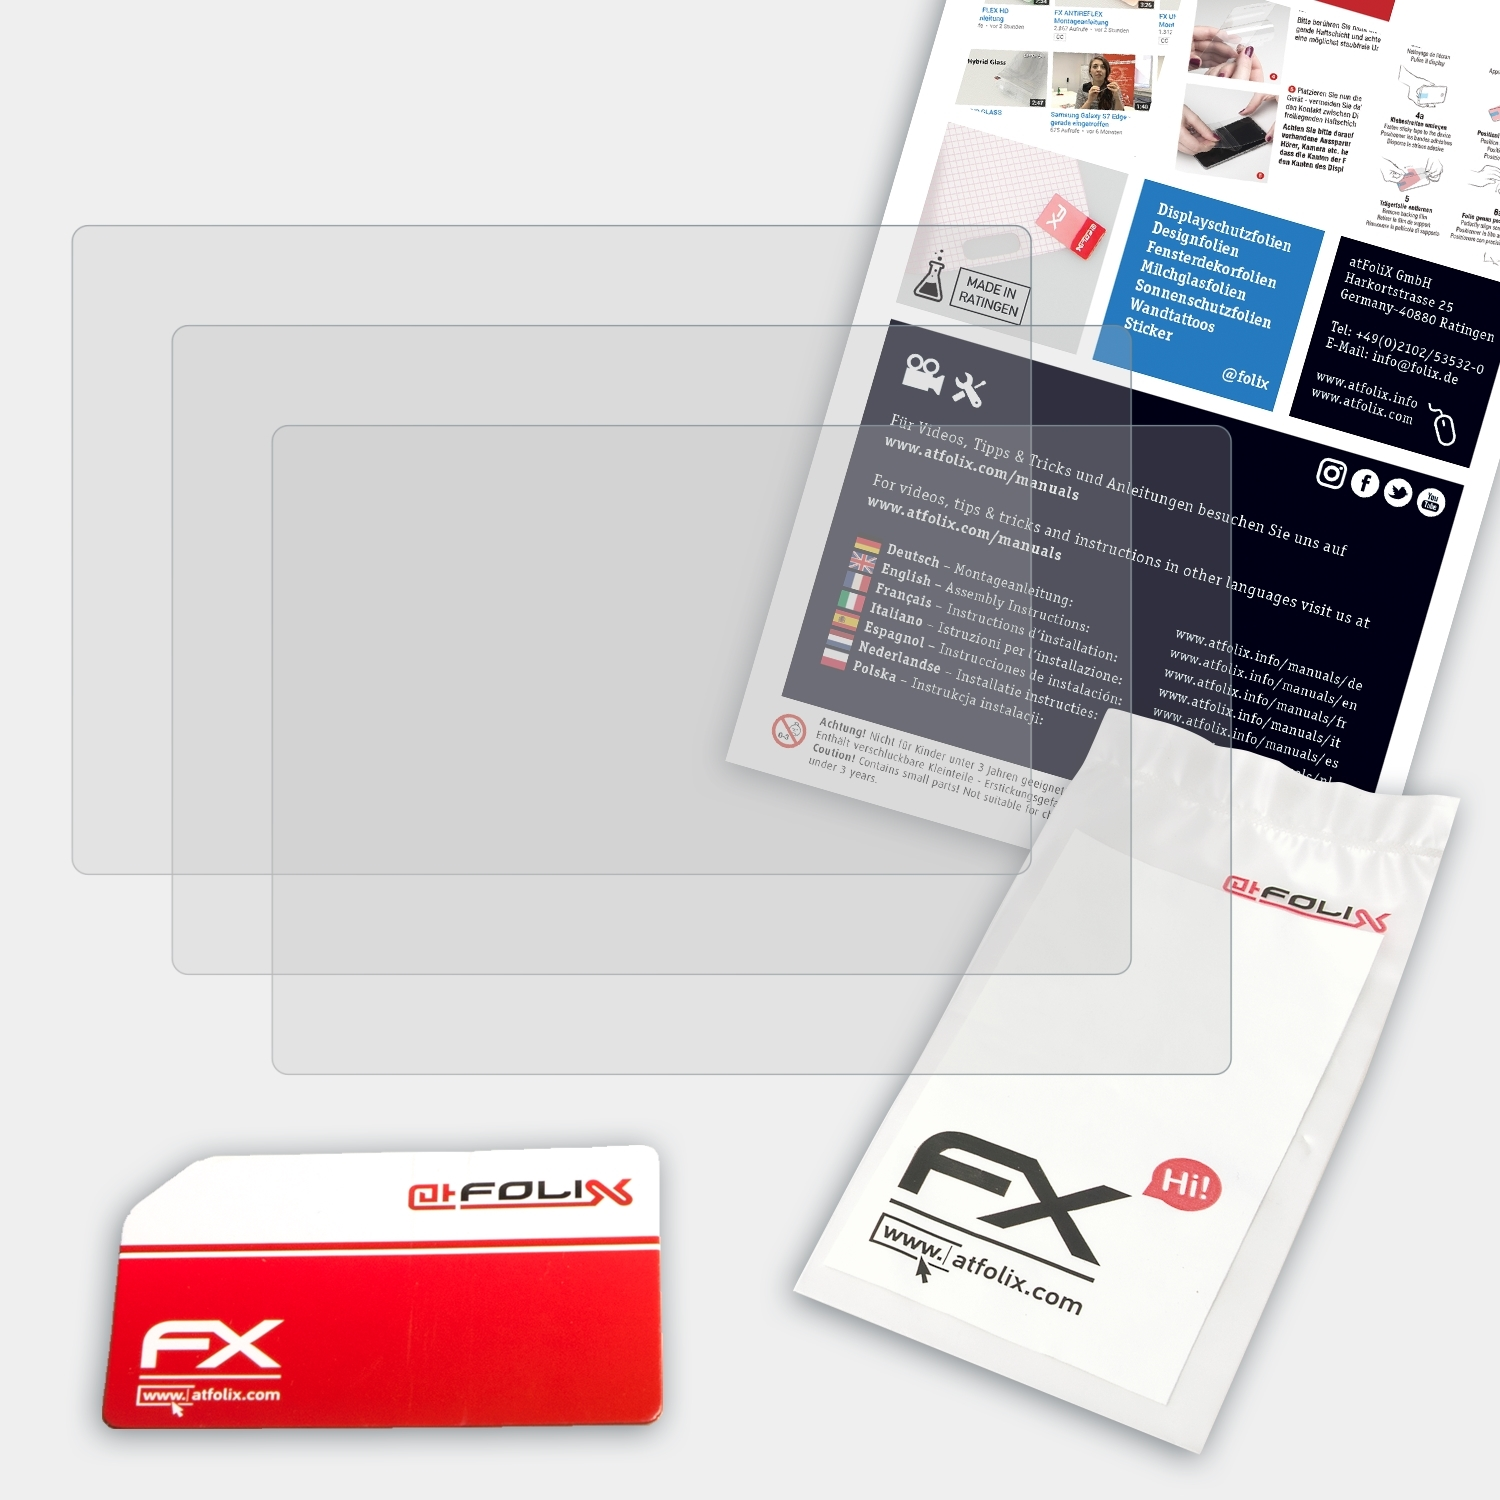 ATFOLIX 3x FX-Antireflex D-Lux Leica 3) Displayschutz(für